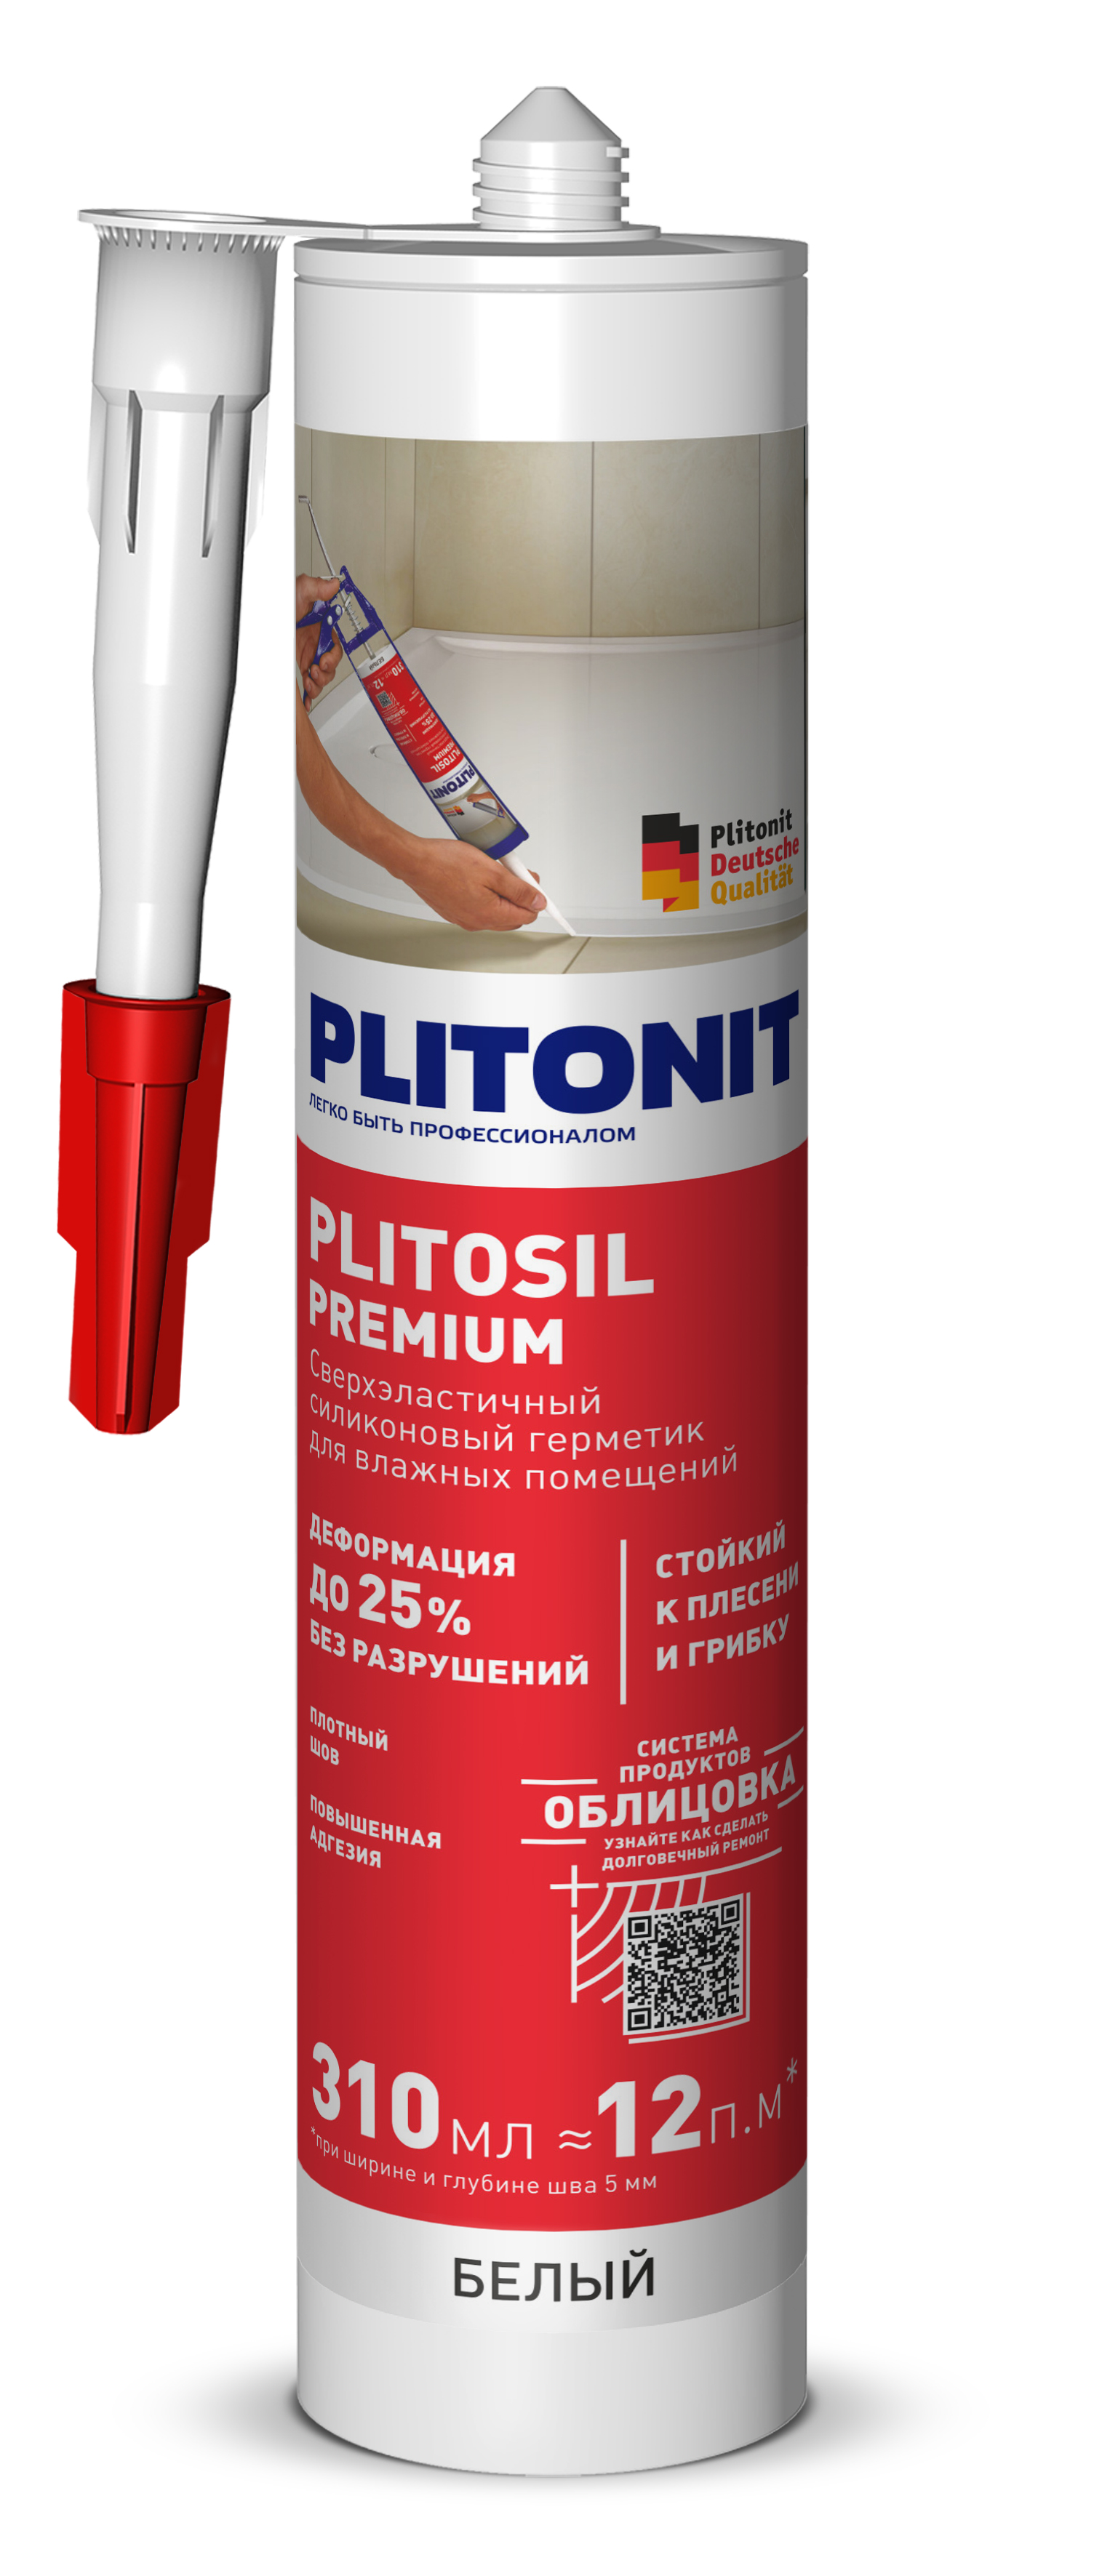 PLITONIT PlitoSil Premium Герметик сверхэластичный силиконовый для влажных помещений, белый 310 мл